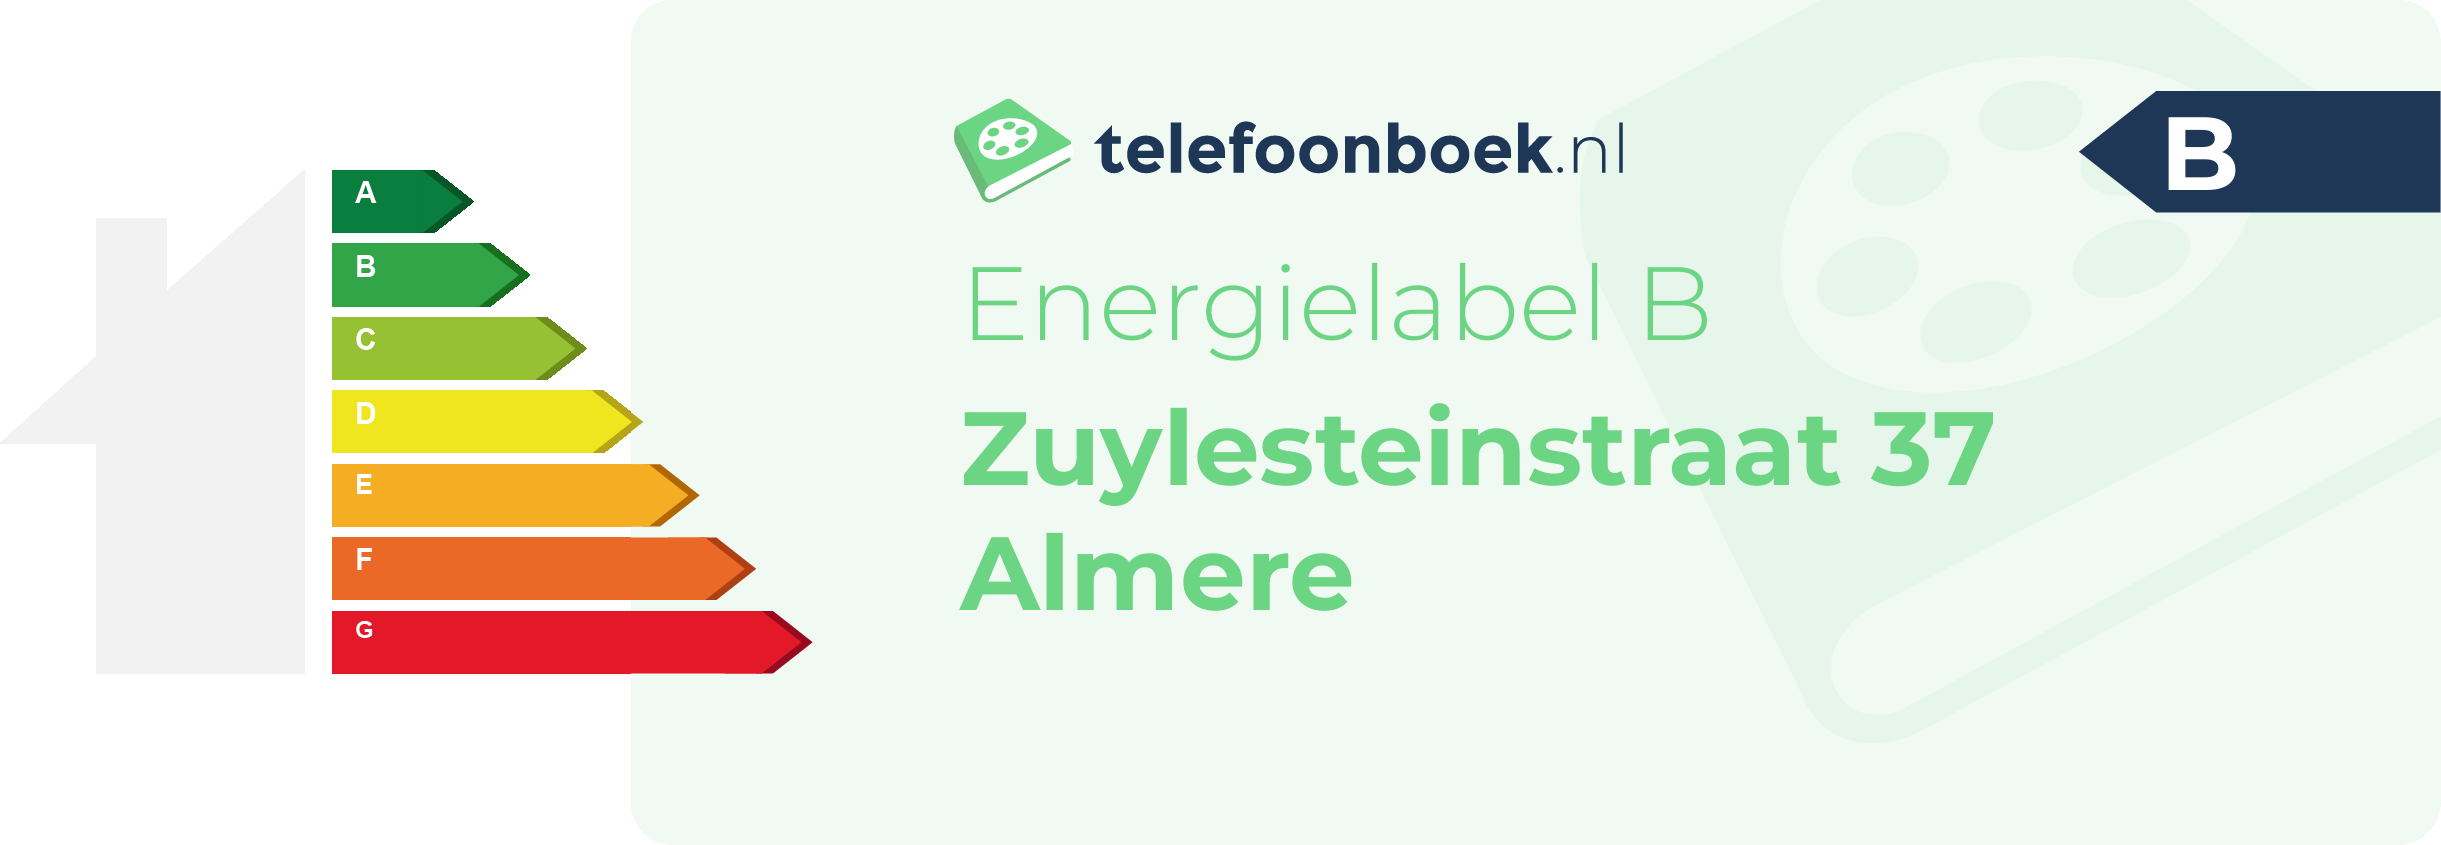 Energielabel Zuylesteinstraat 37 Almere